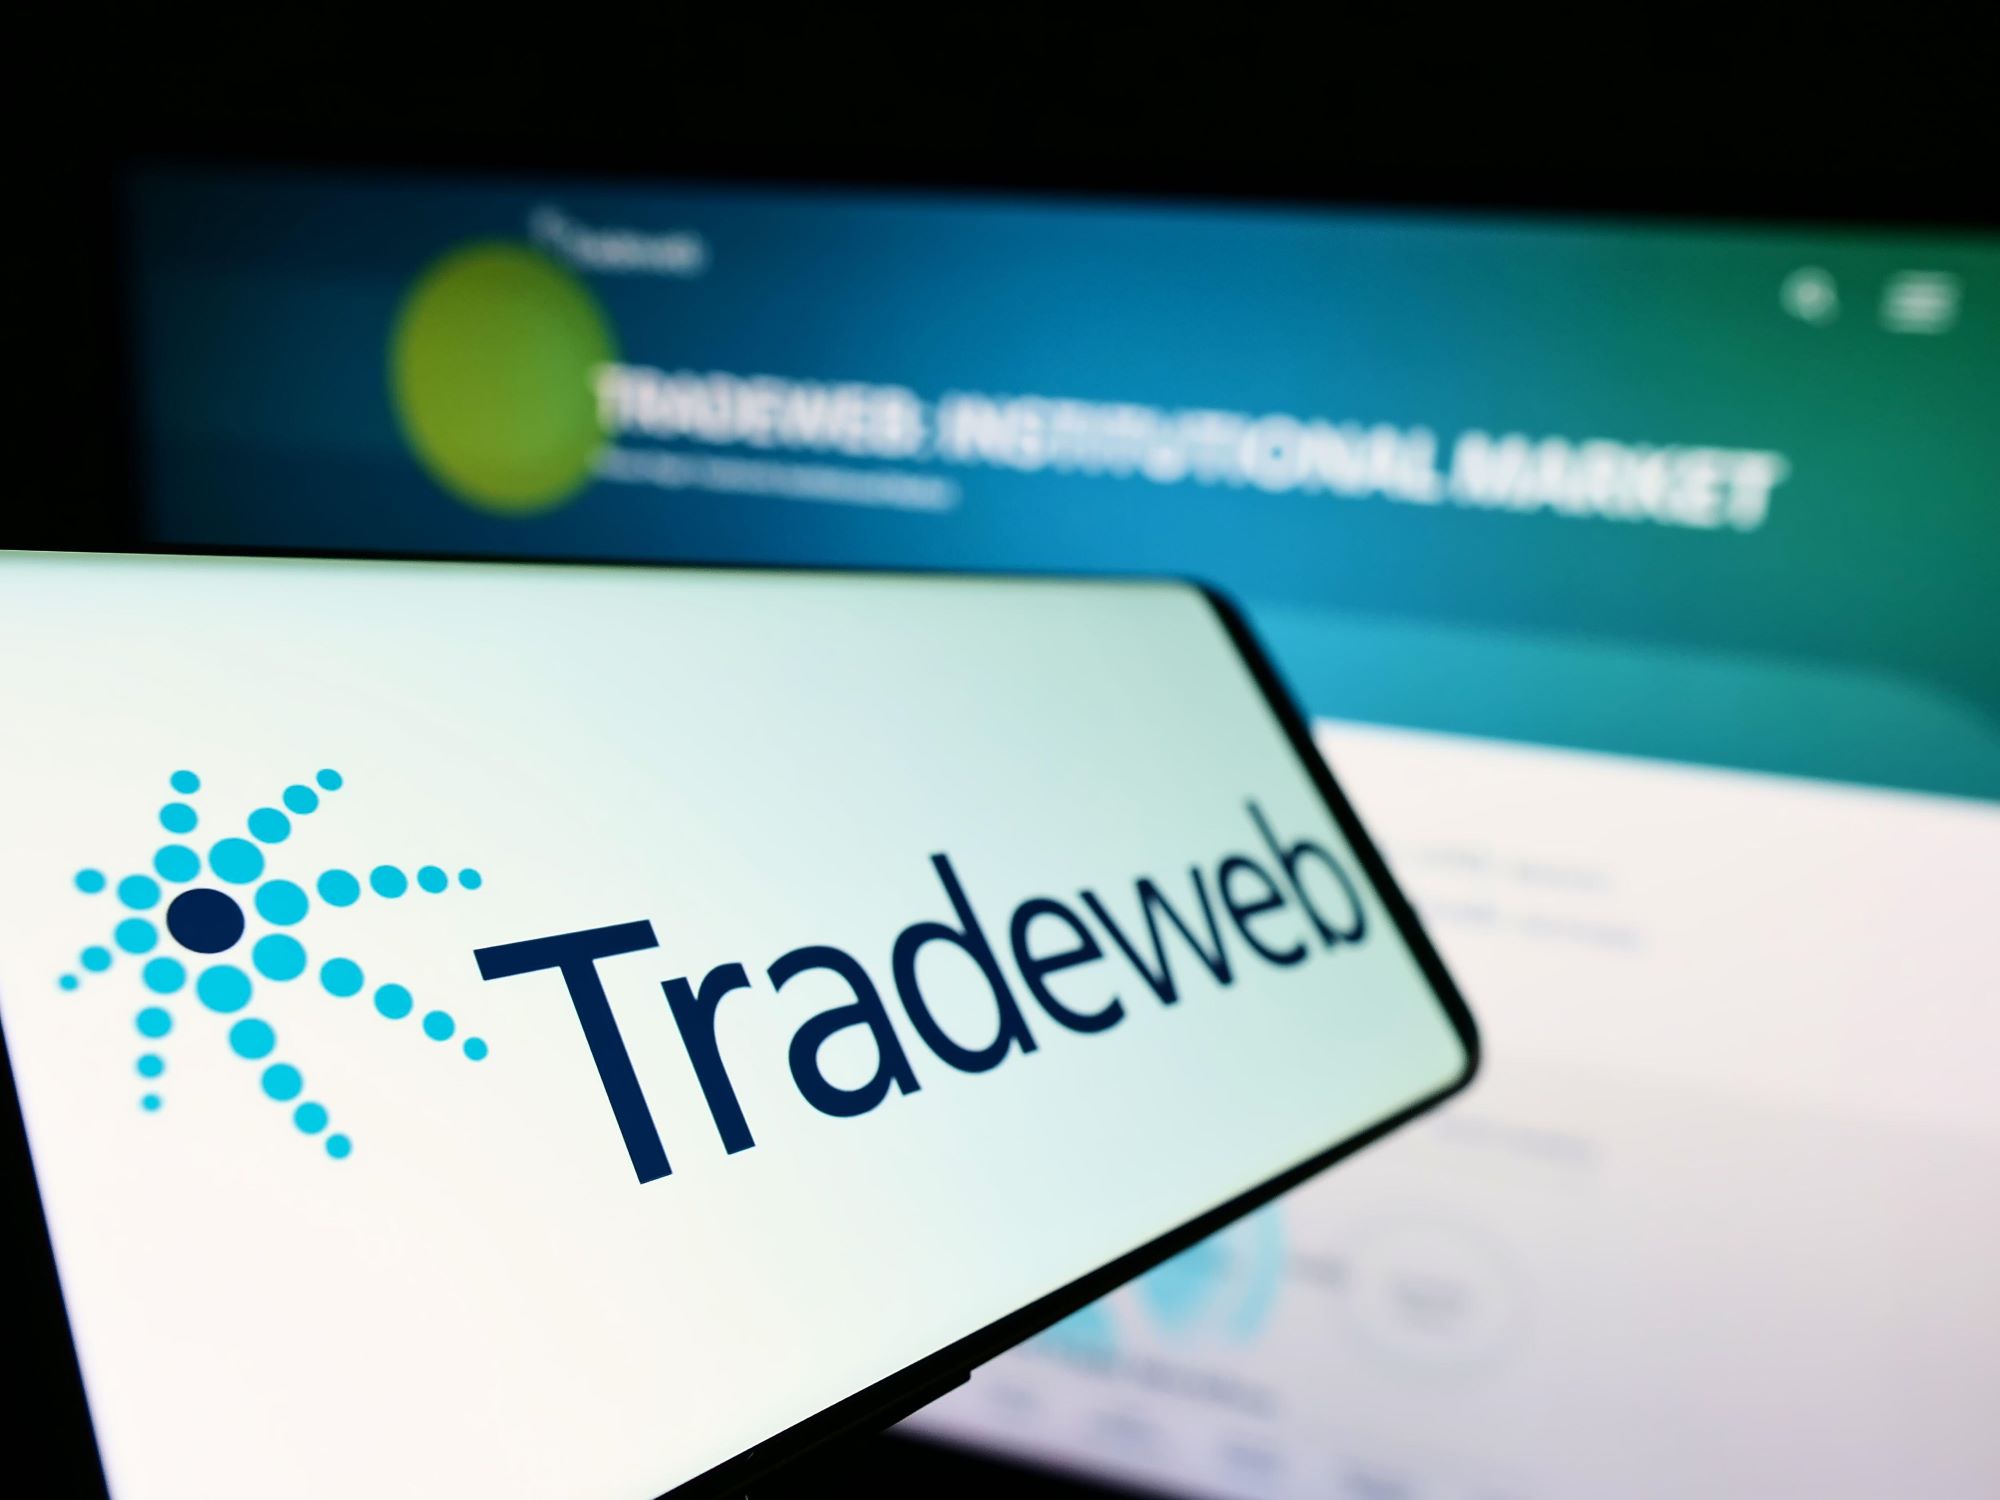 حجم التداول في Tradeweb لشهر أغسطس يصل إلى 33 تريليون دولار بعد ربع قوي